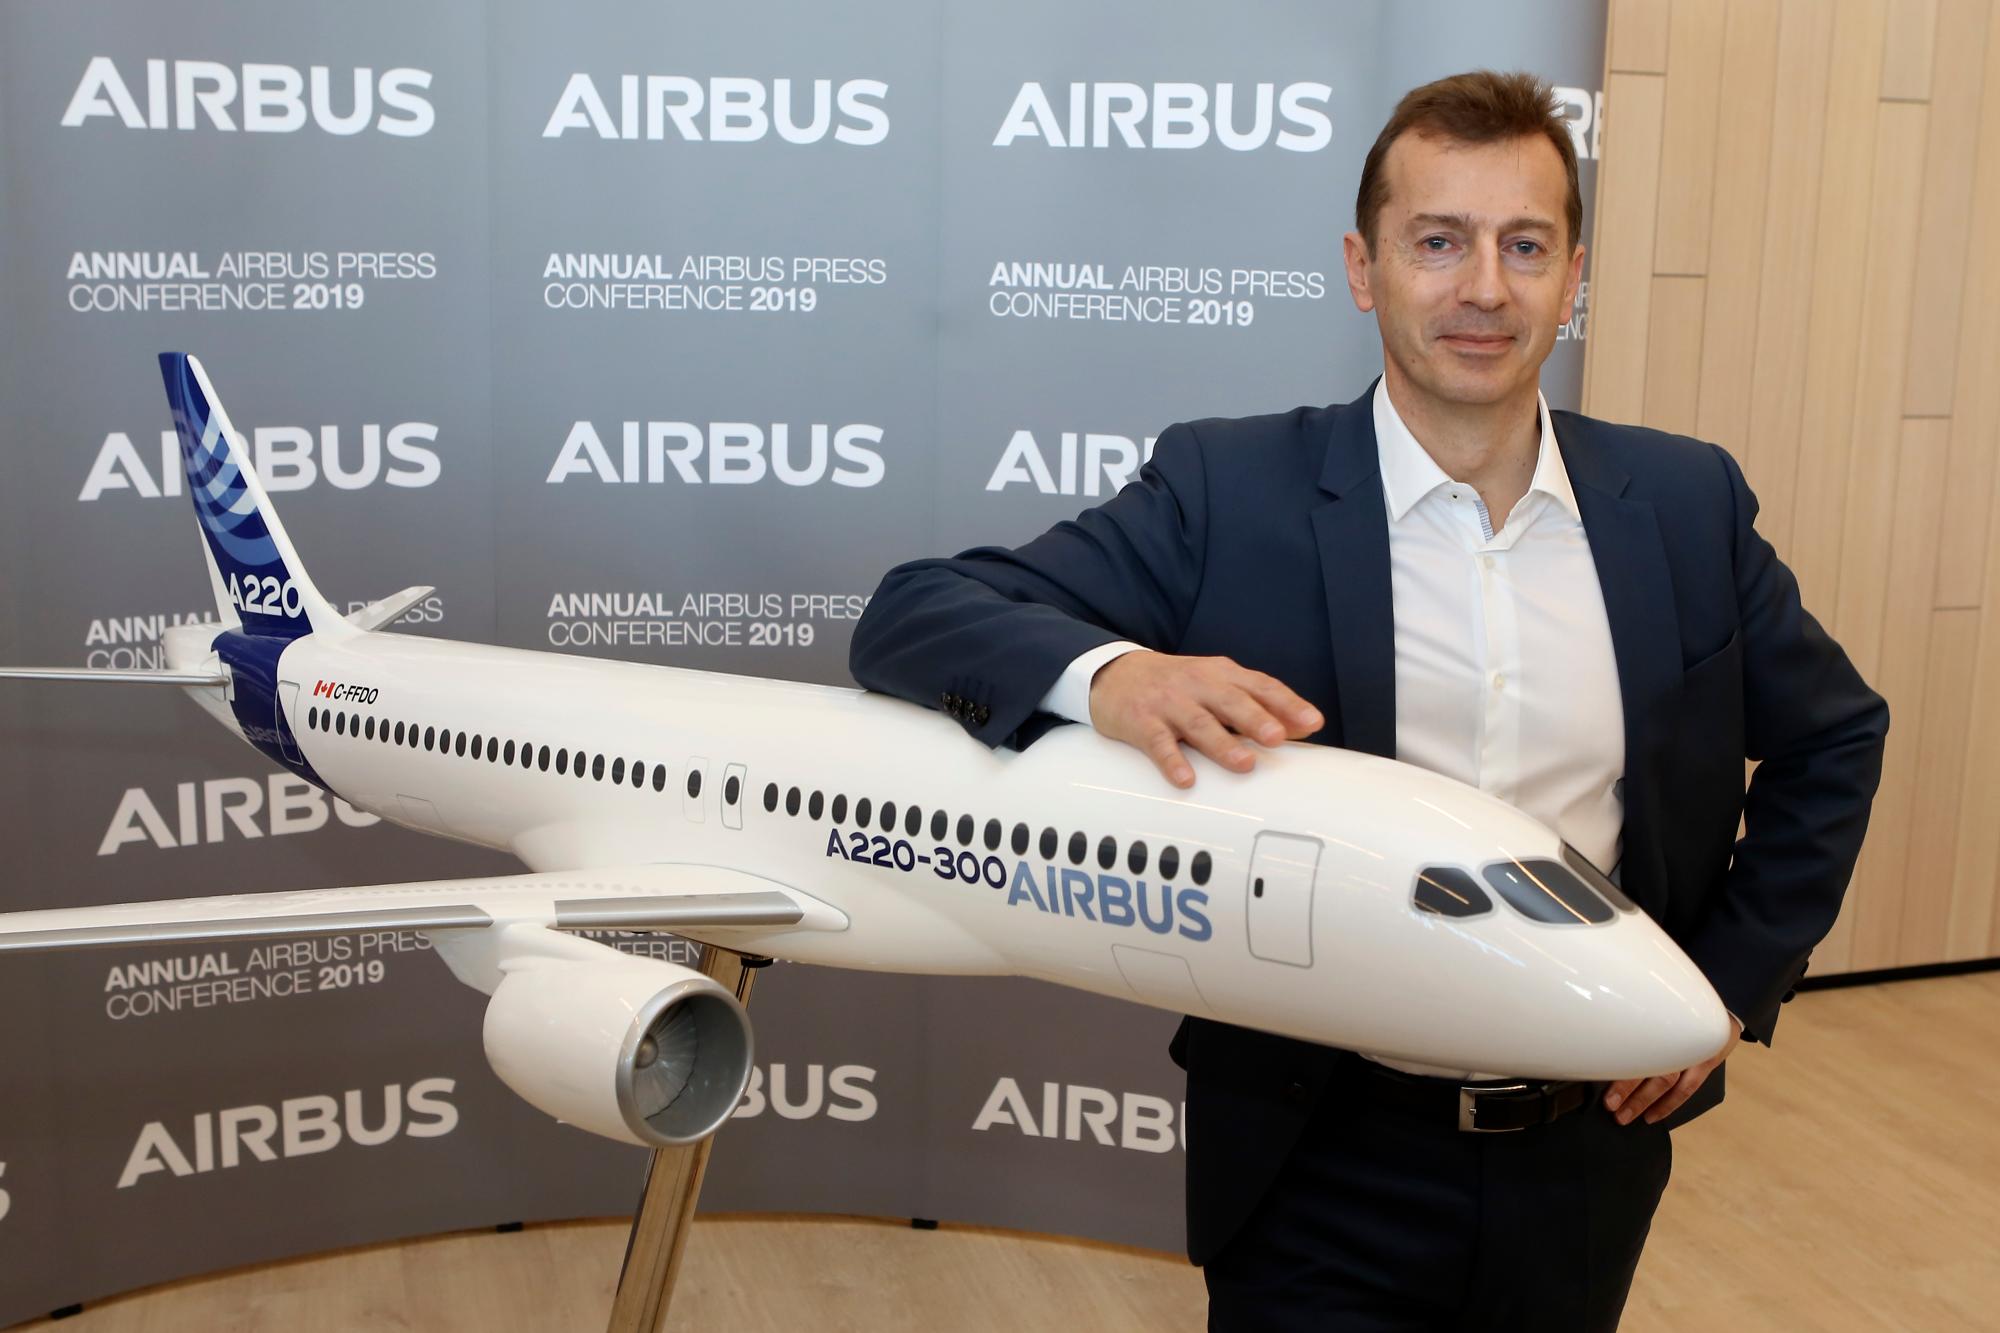 El presidente de Airbus, Commercial Aricraft y el futuro director general del grupo de Airbus, Guillaume Faury, posa con una réplica de un avión A220 después de la presentación de los resultados del Airbus 2018 en Toulouse, sur de Francia.